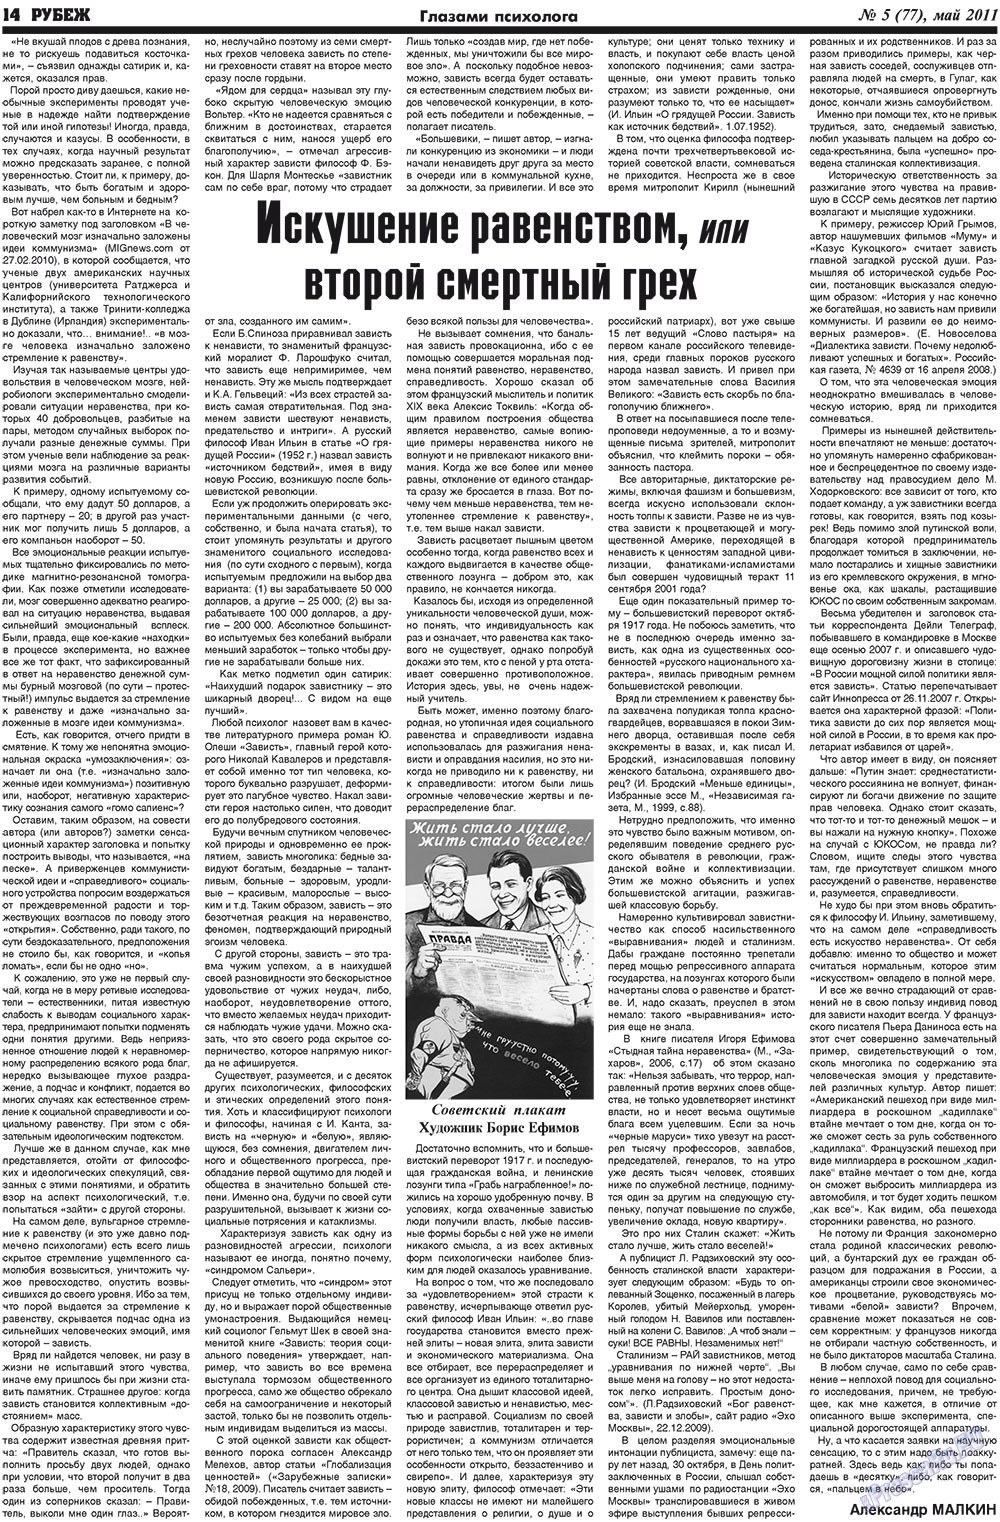 Рубеж (газета). 2011 год, номер 5, стр. 14